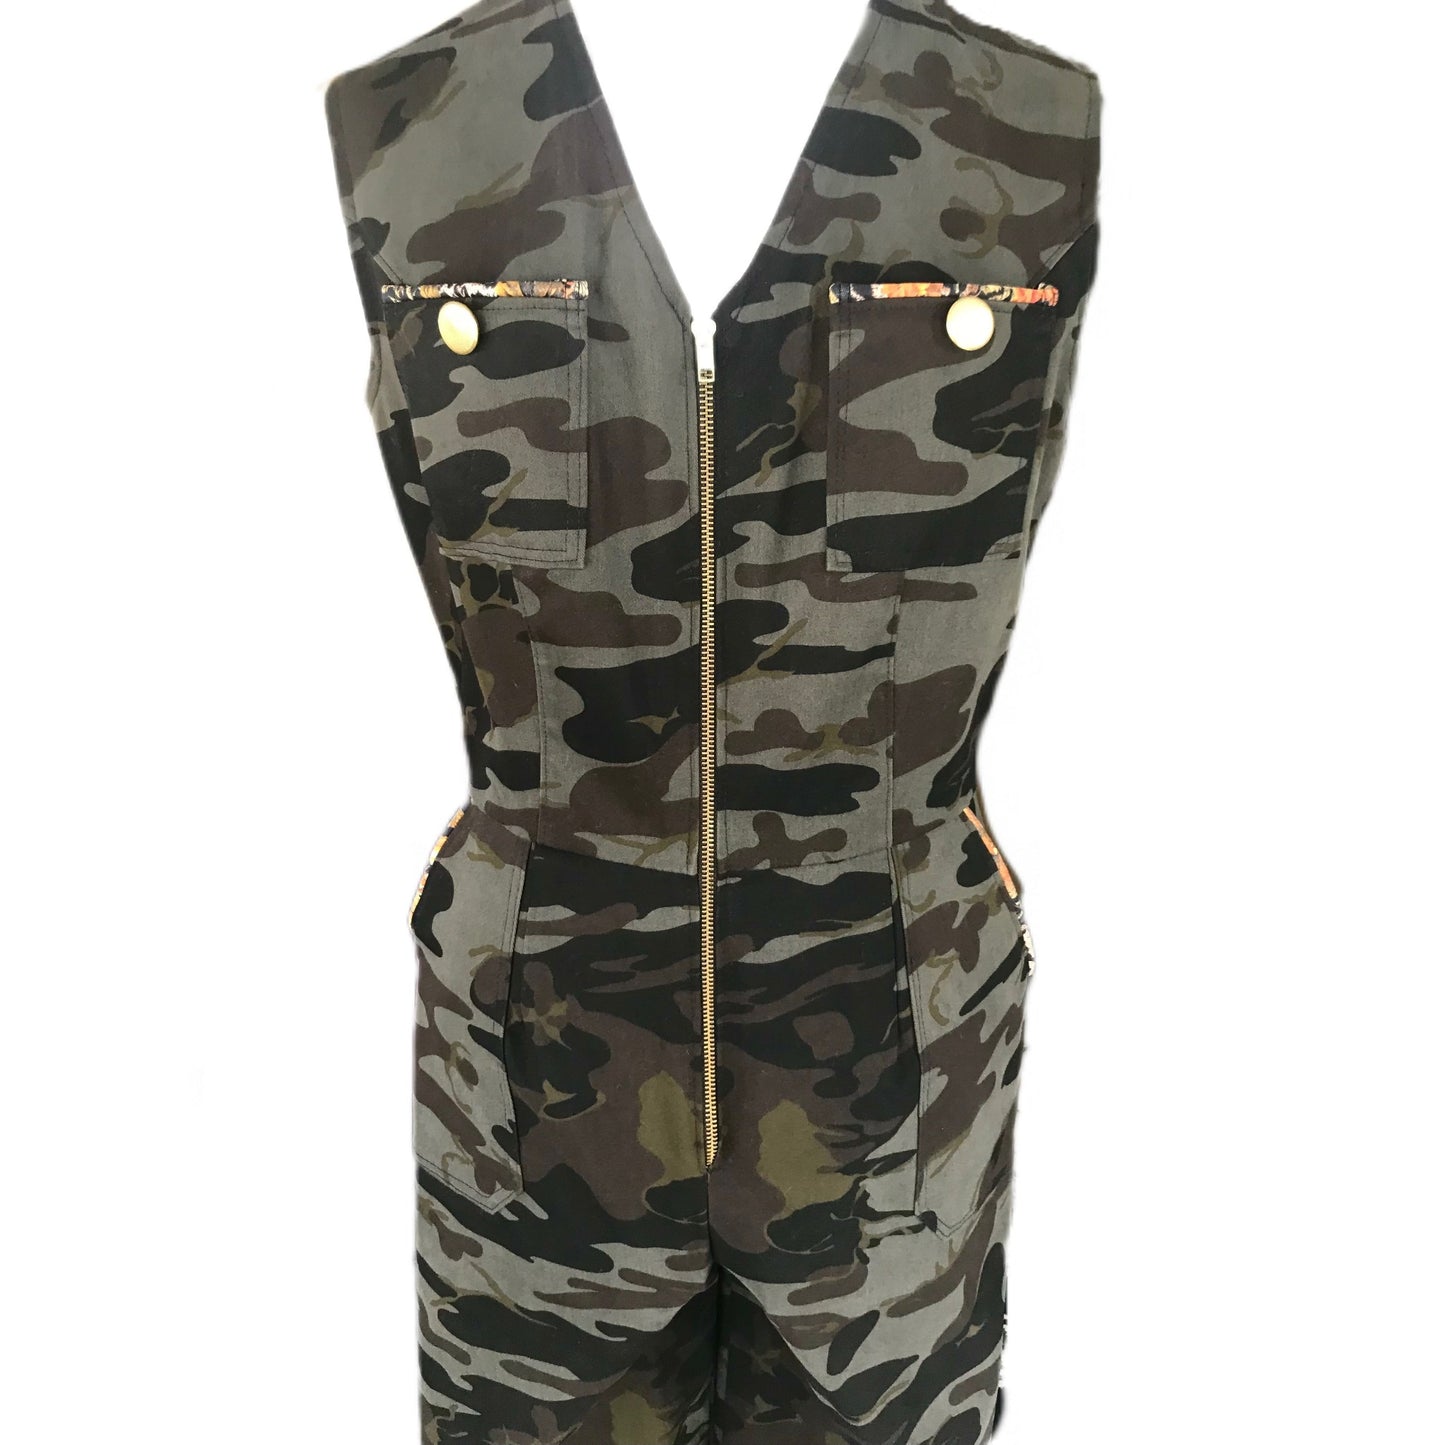 Women's Camouflage Jumpsuit - Size 10